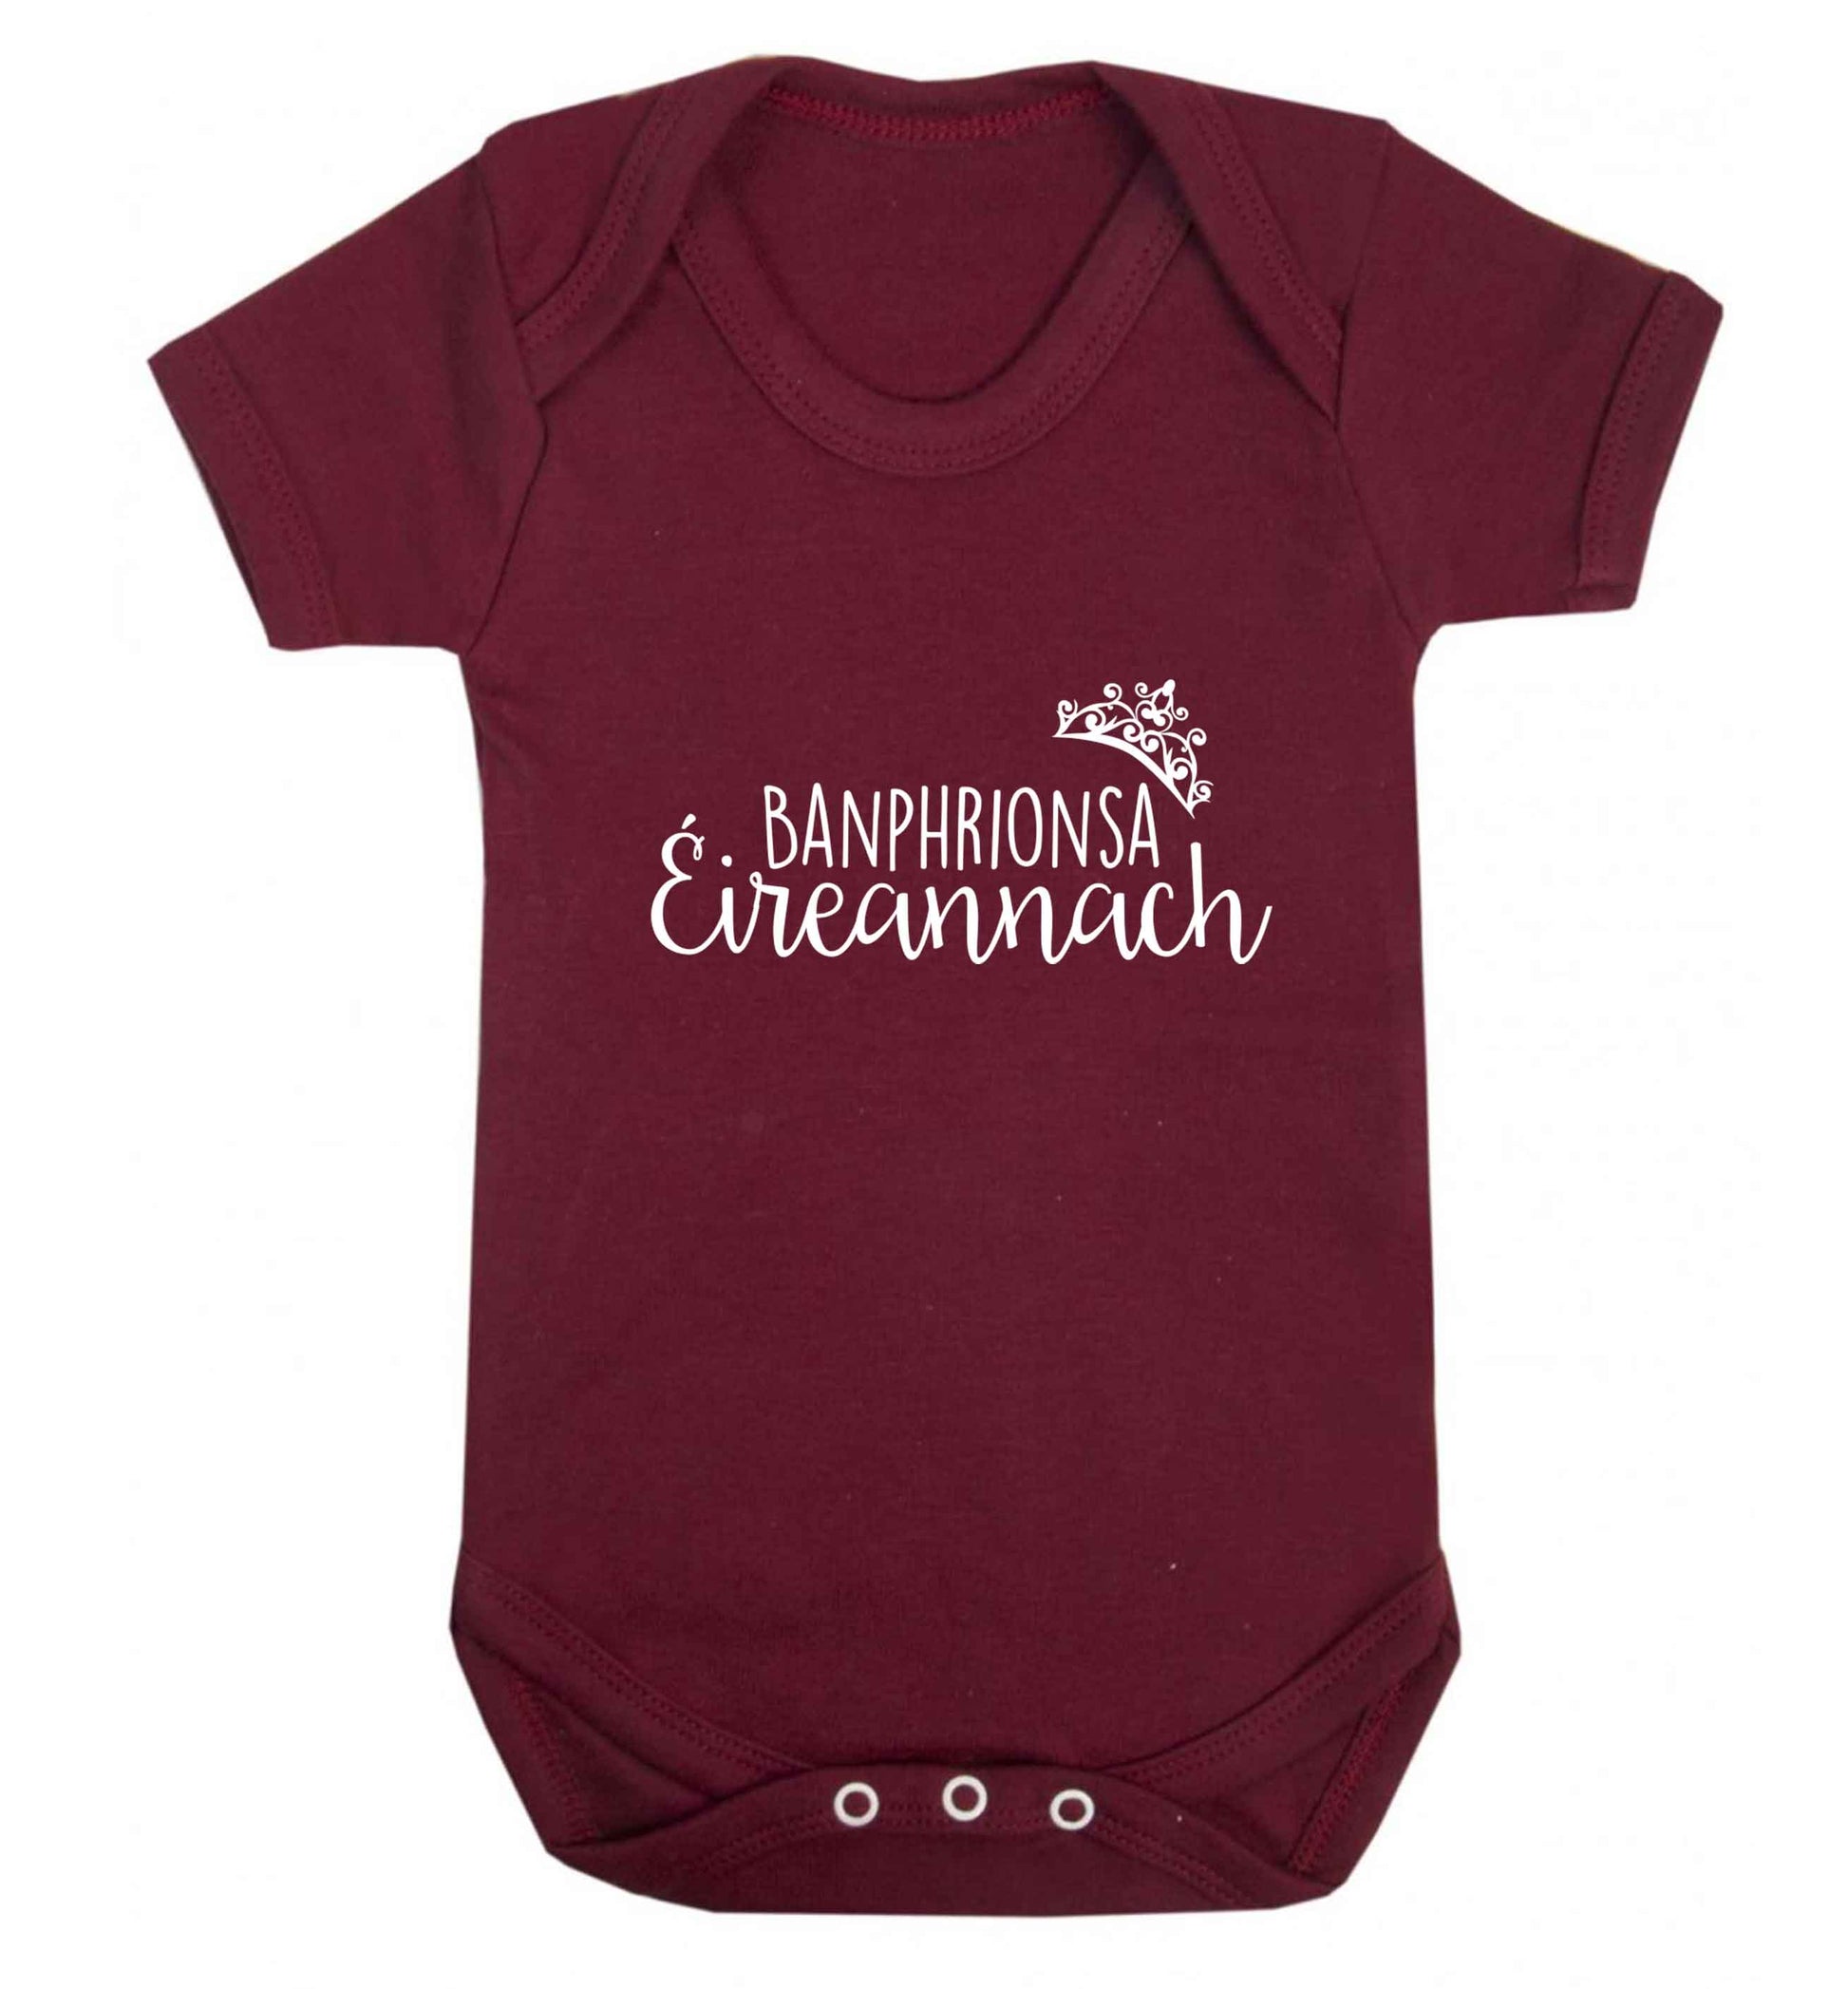 Banphrionsa eireannach baby vest maroon 18-24 months